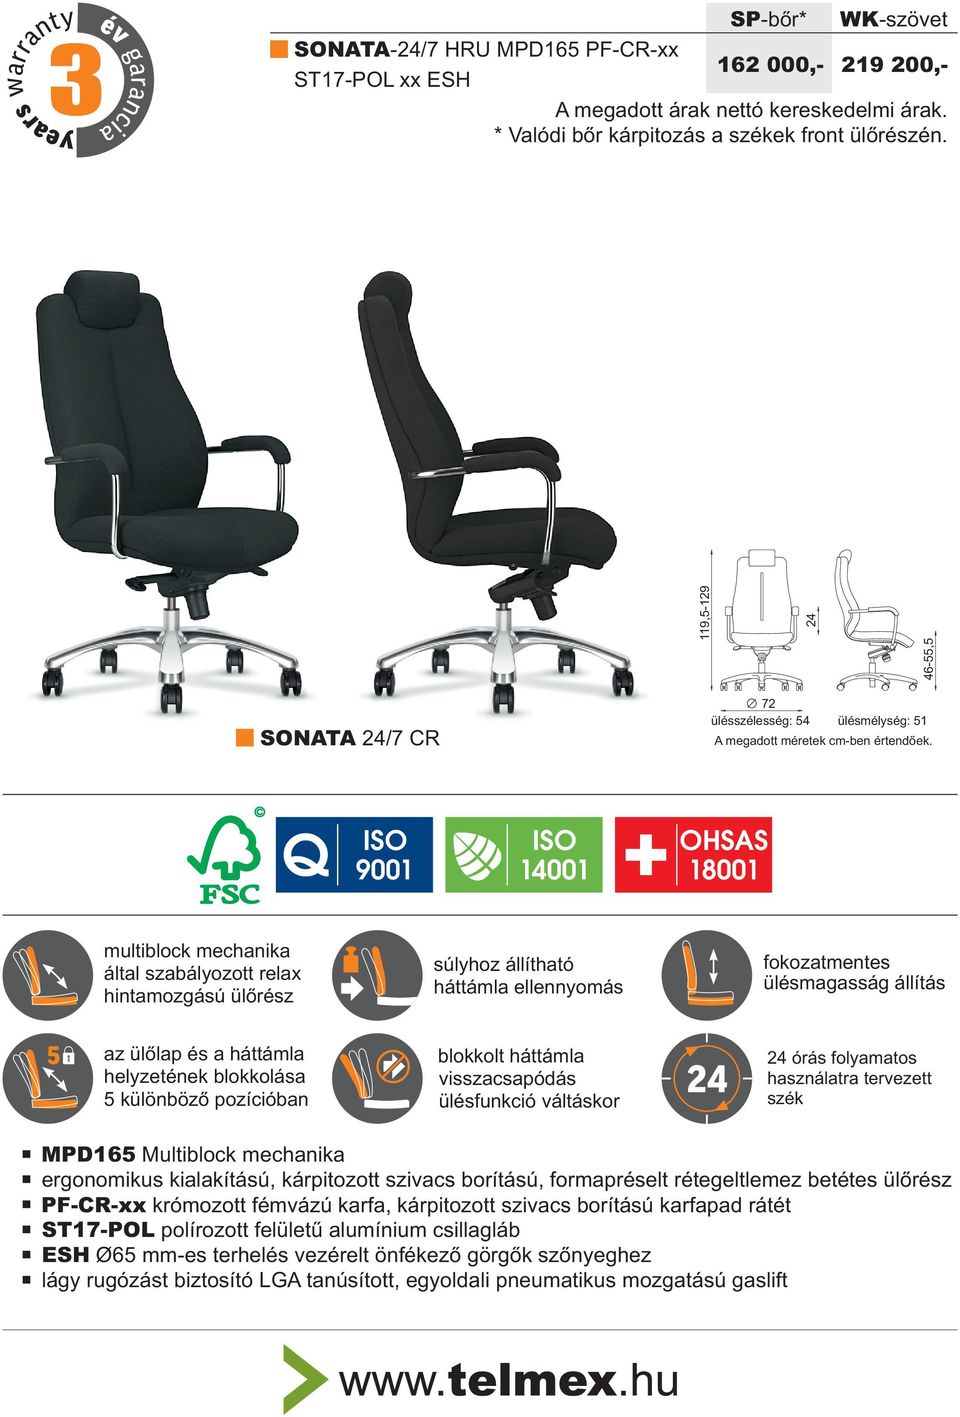 Q ISO ISO 9001 14001 OHSAS 18001 multiblock mechanika által szabályozott relax hintamozgású ülõrész súlyhoz állítható háttámla ellennyomás fokozatmentes ülésmagasság állítás 5 az ülõlap és a háttámla